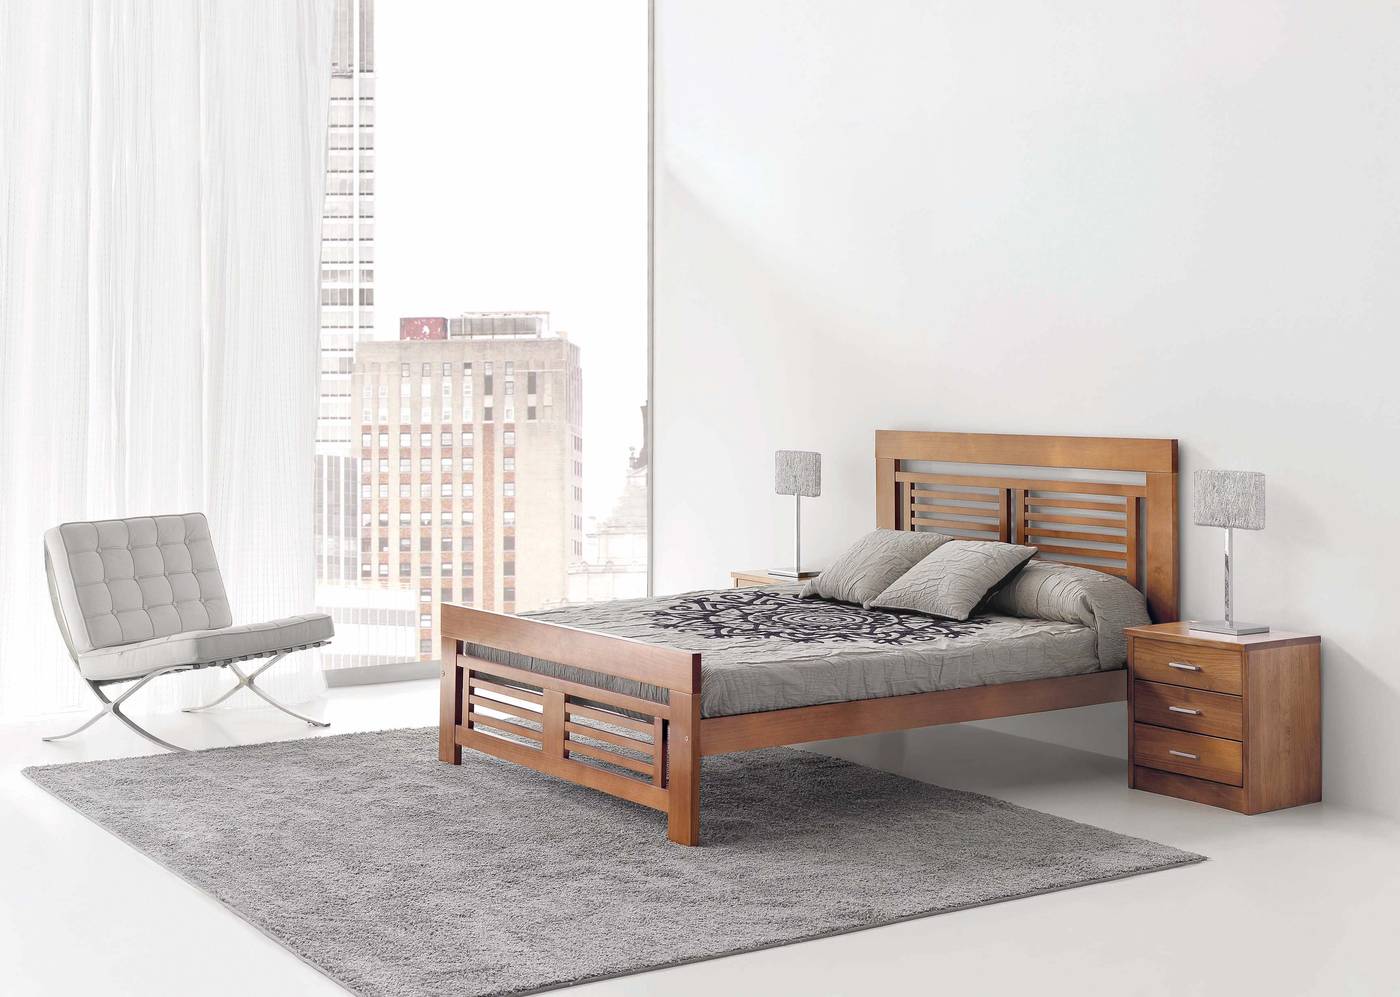 Cabezal Coral Gala - Cabezal de cama de madera de pino maciza, disponible en varias medidas y colores de madera.